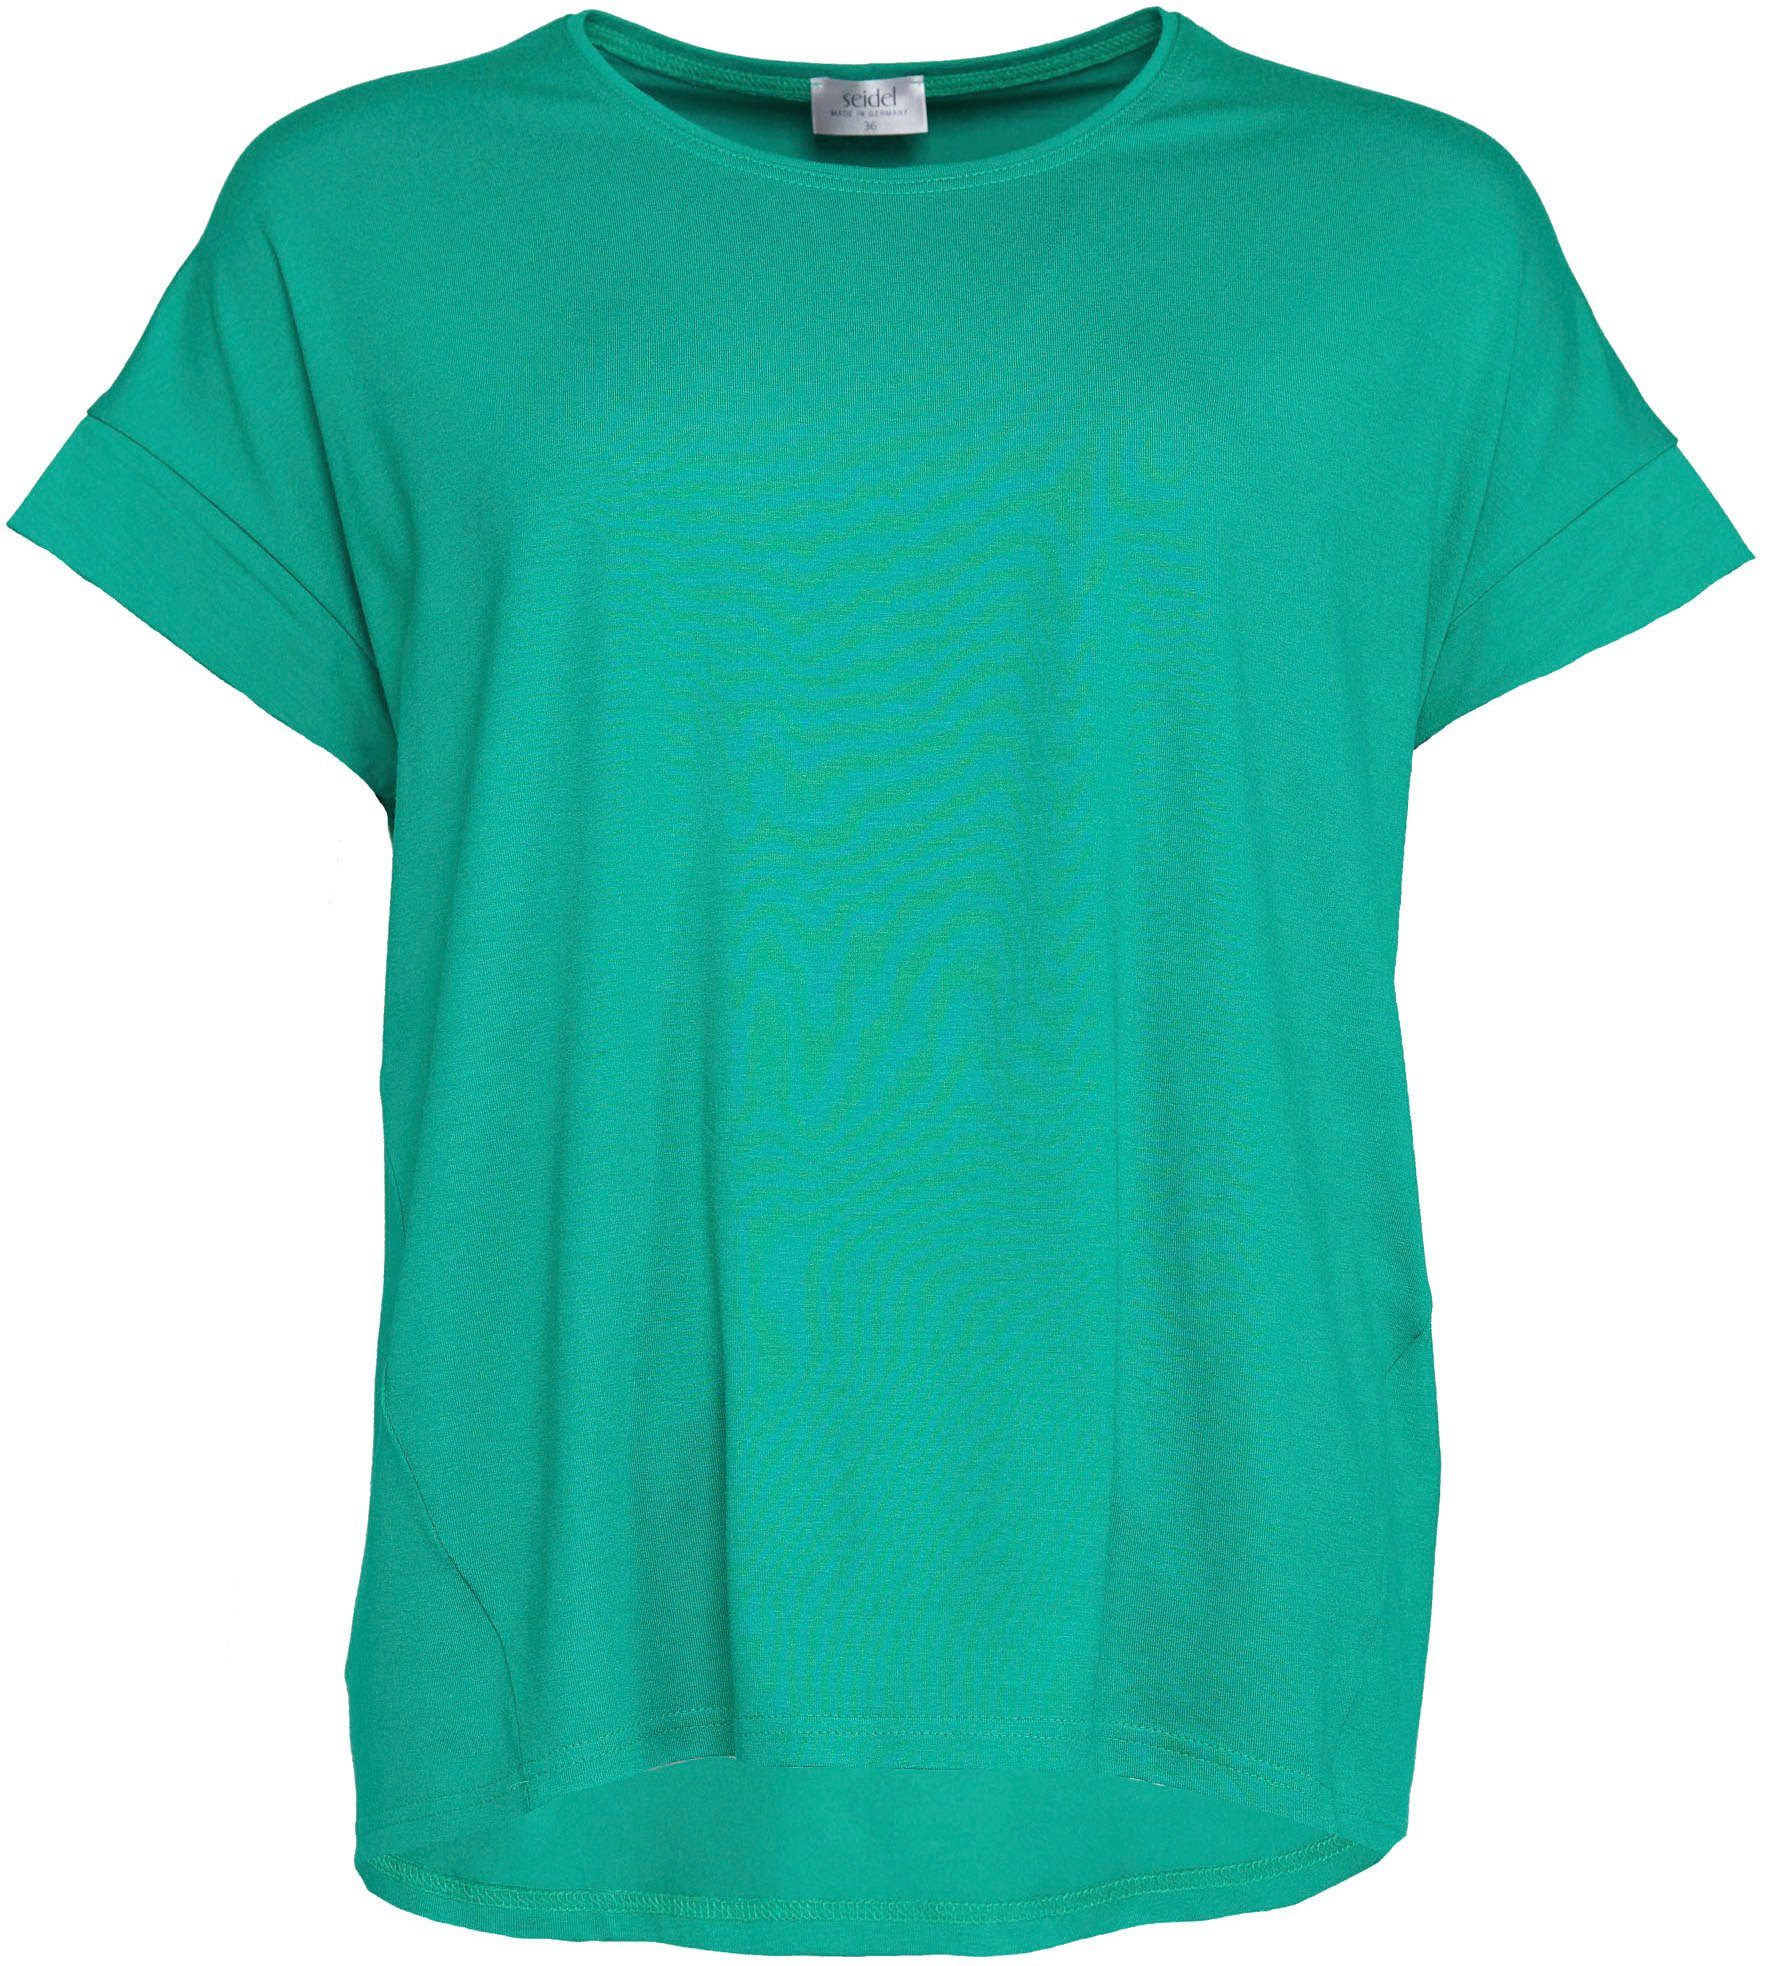 Seidel Moden Kurzarmshirt mit überschnittenen grün Schultern